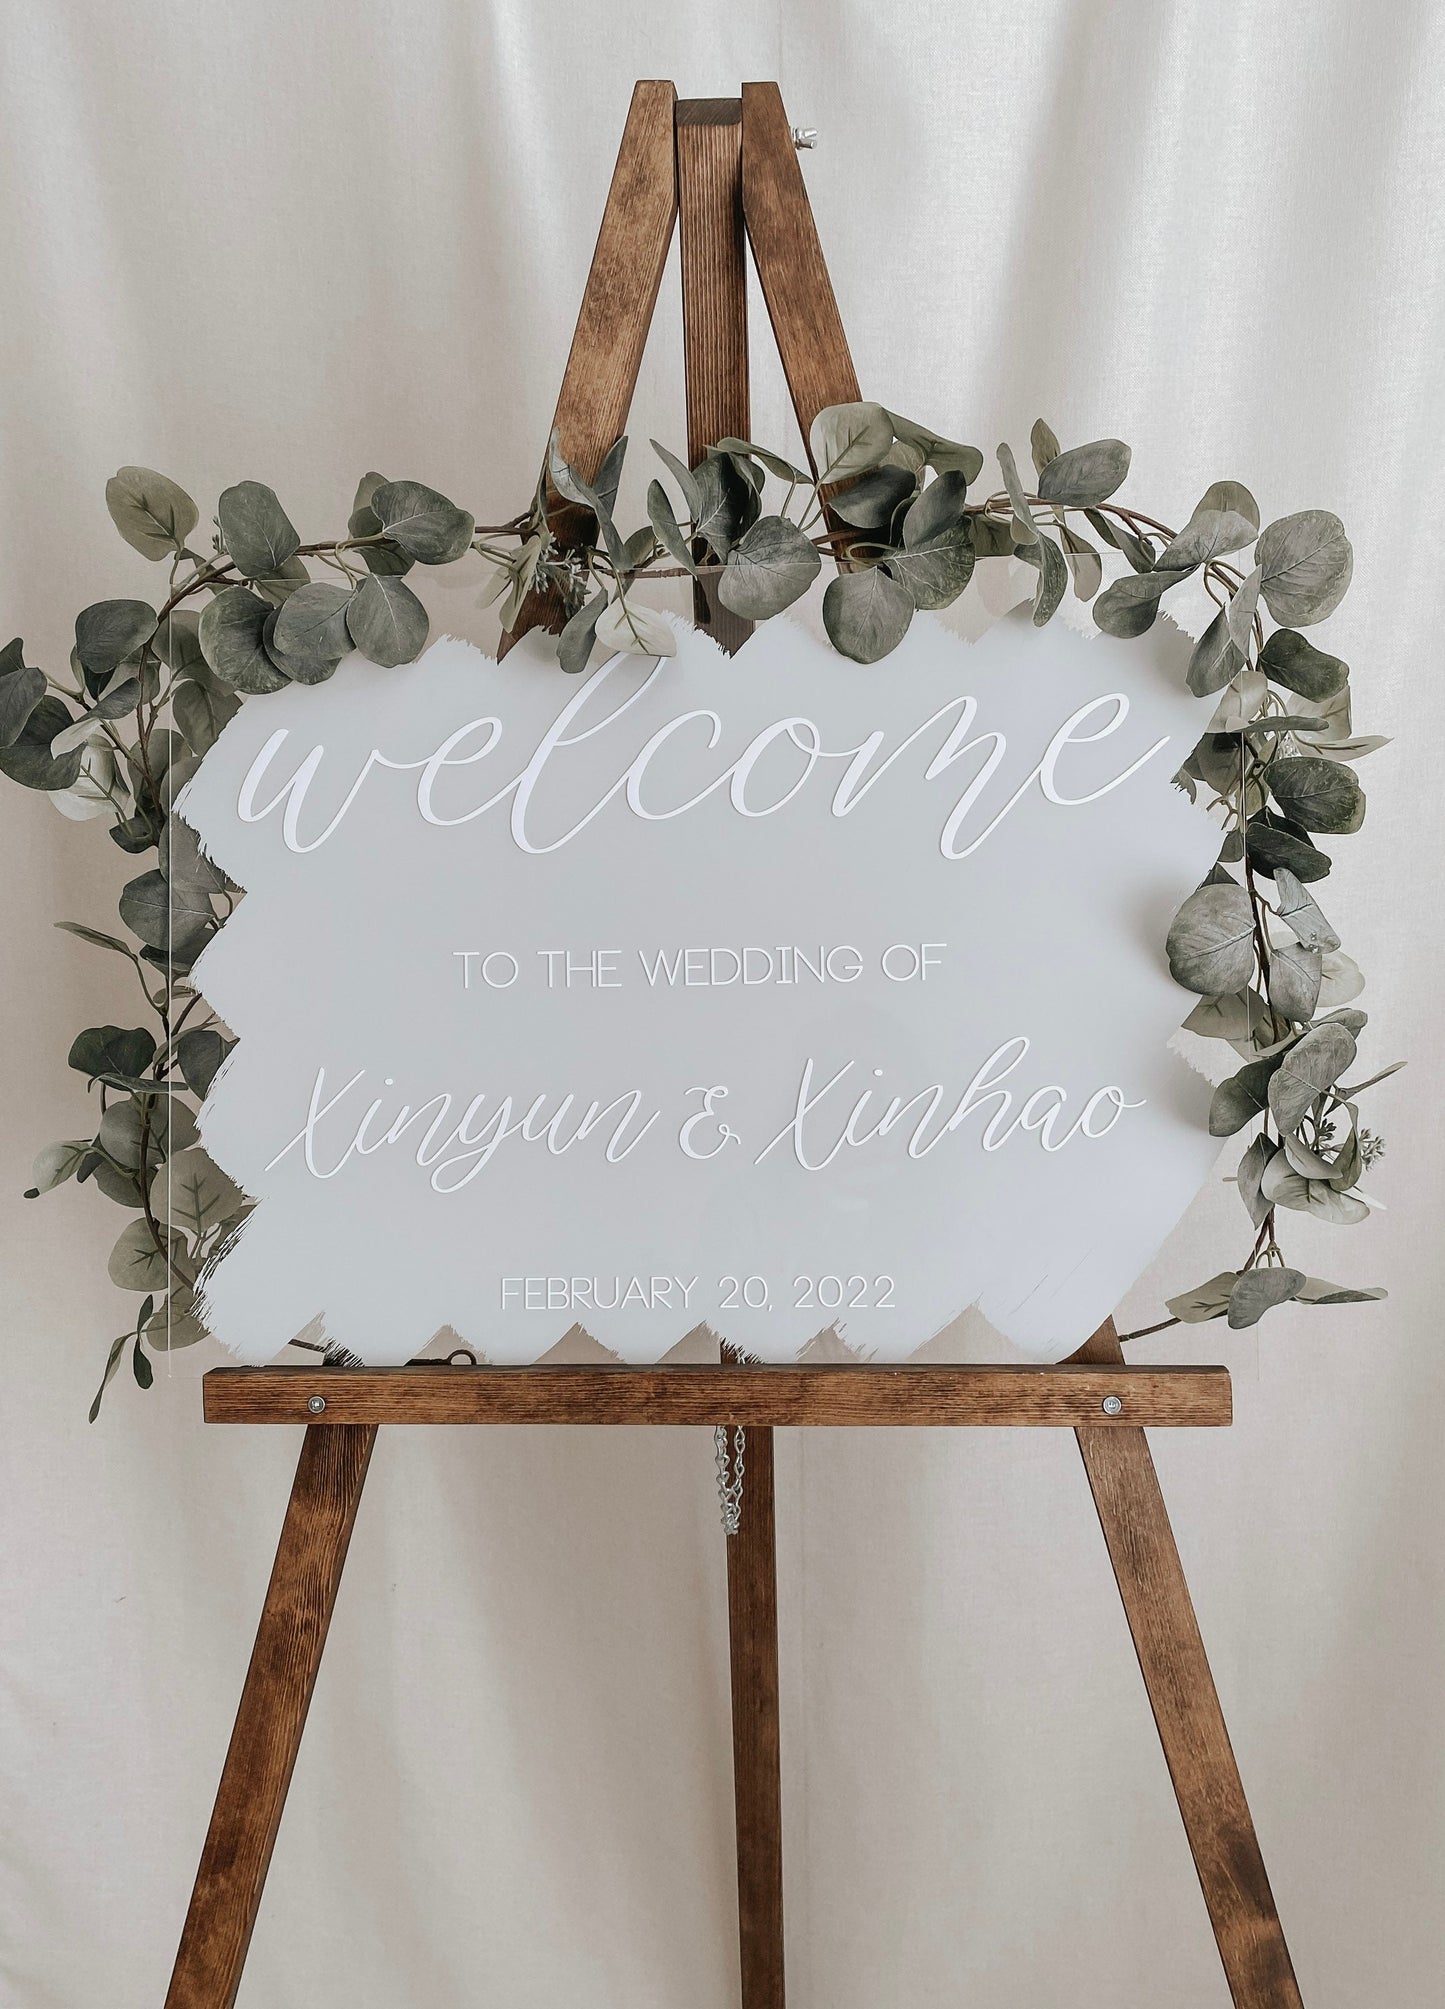 Acrylic Wedding Welcome Sign